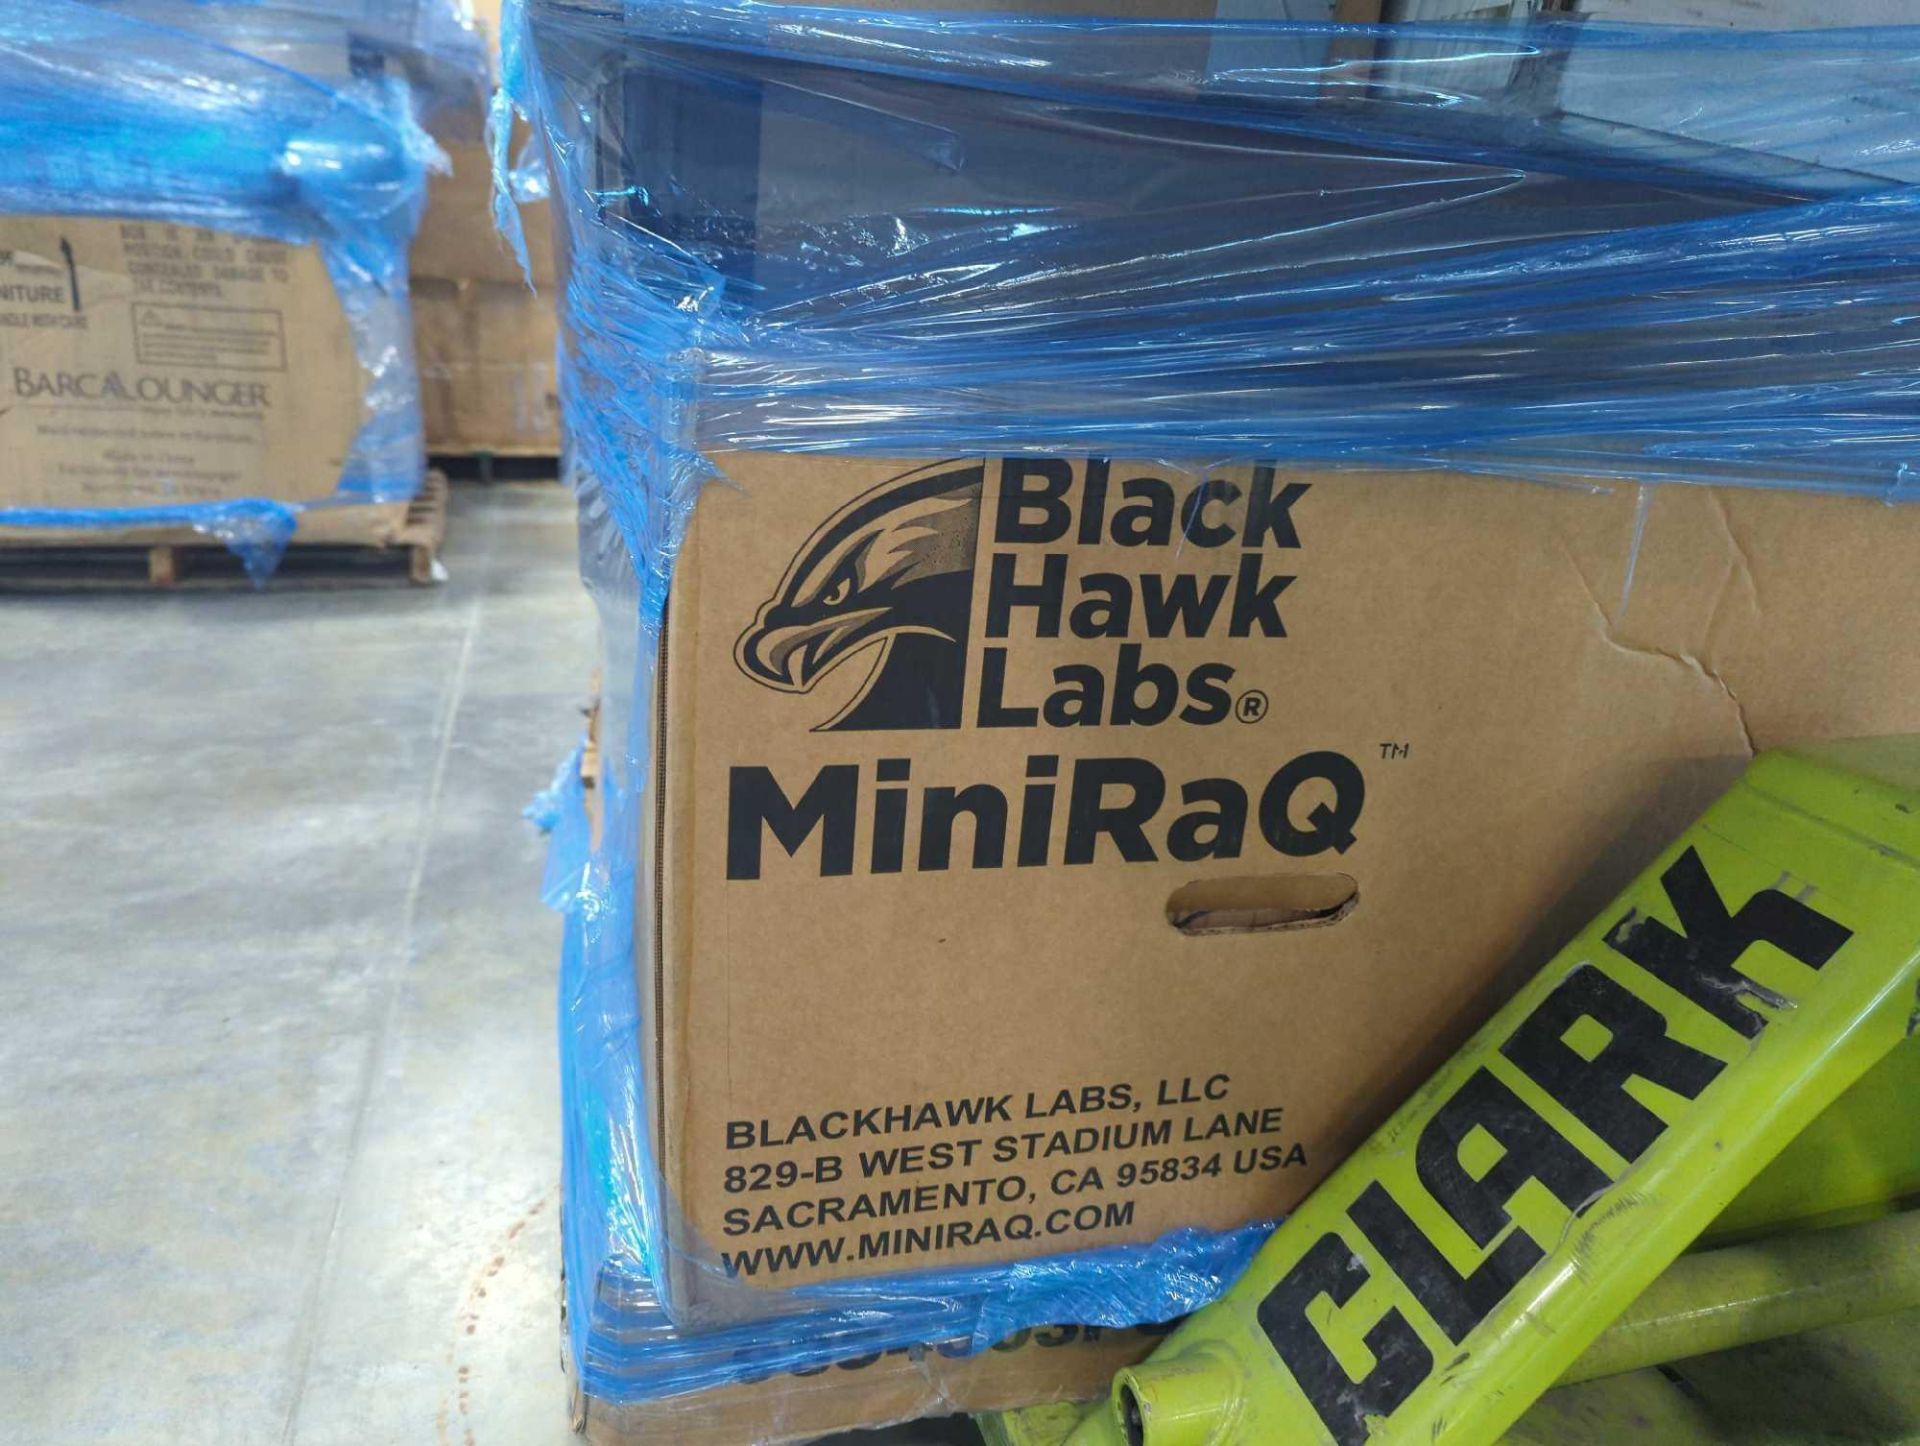 Black Hawk Labs Mini RaQ - Image 10 of 17